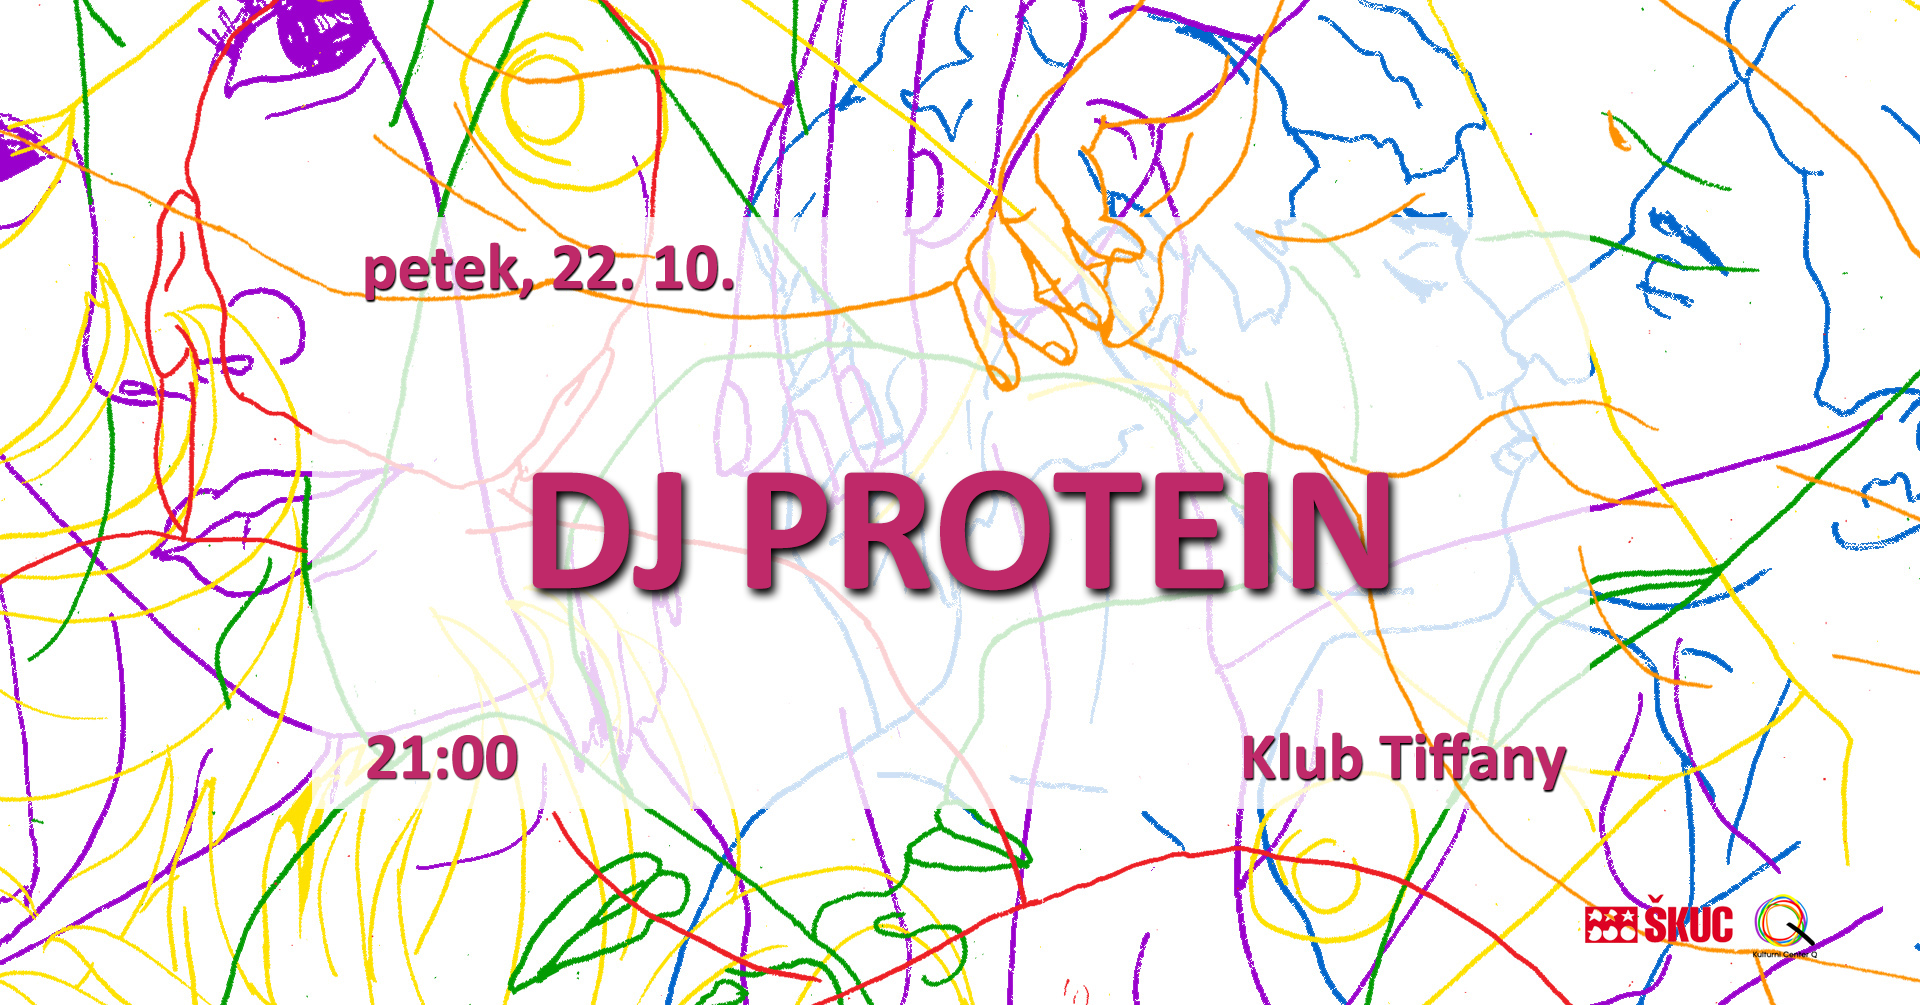 DJ Protein petek 22.10.